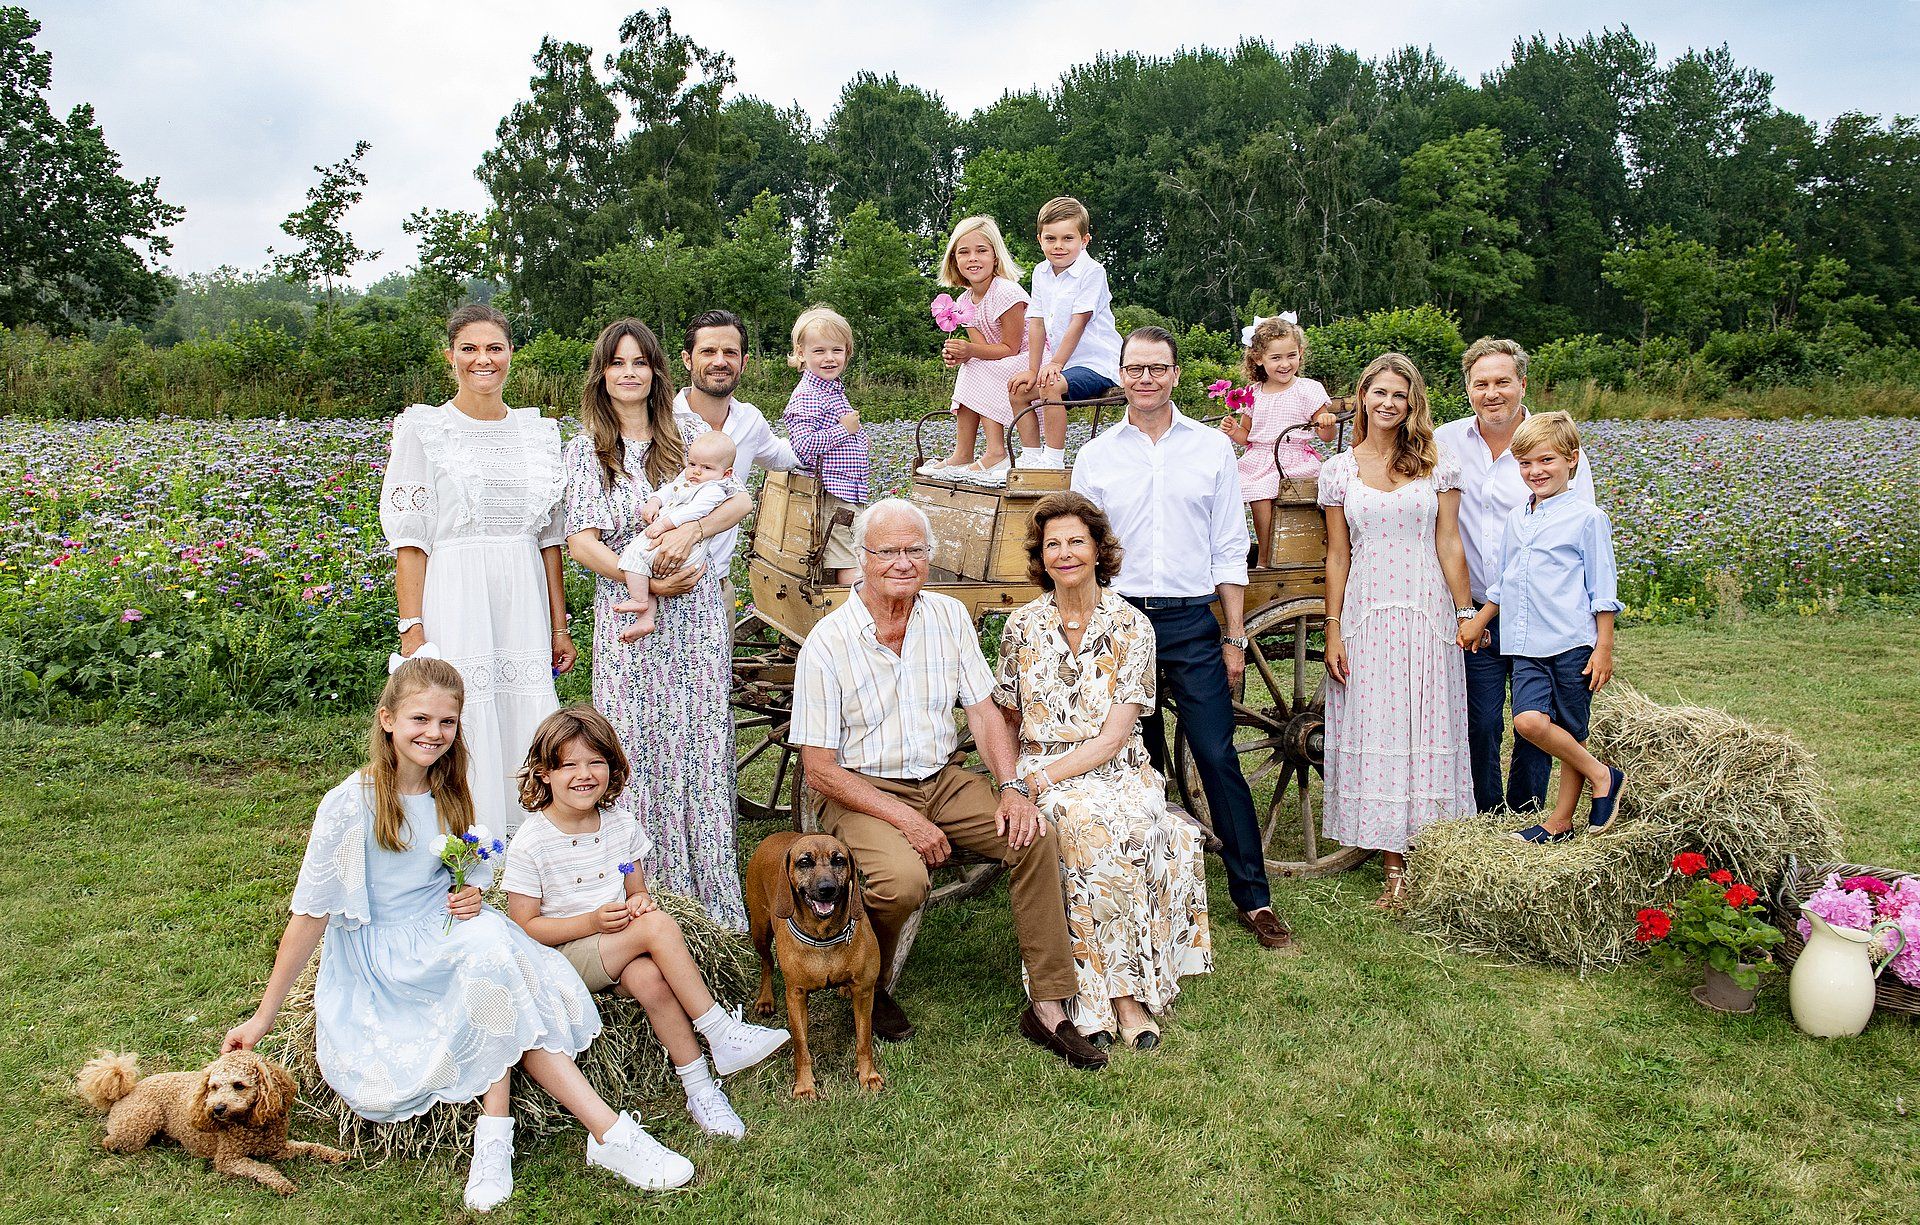 In de loop der jaren is het gezin van Silvia uitgebreid met twee schoonzoons, een schoondochter en acht kleinkinderen. Deze familiefoto is afgelopen zomer gemaakt op hun geliefde vakantie-eiland Öland.